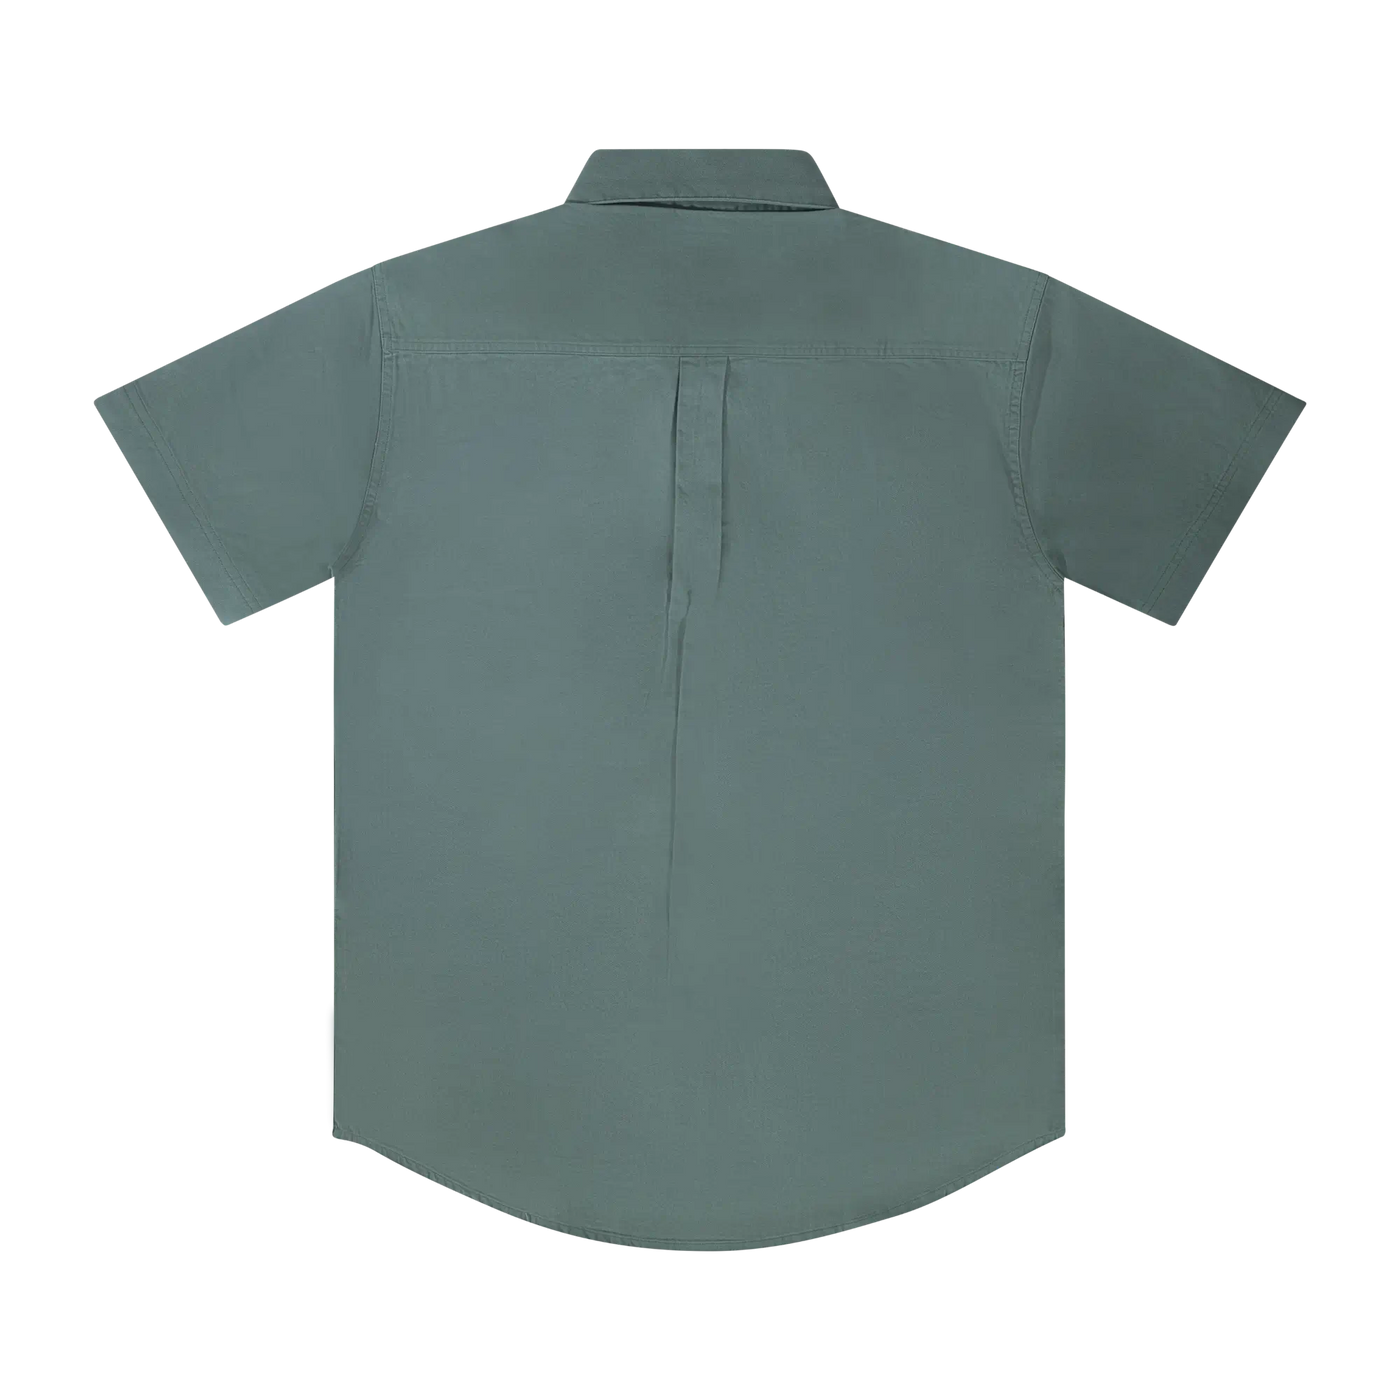 Mossy Oak Dirt Shirt Button Down Short Sleeve Green Back 